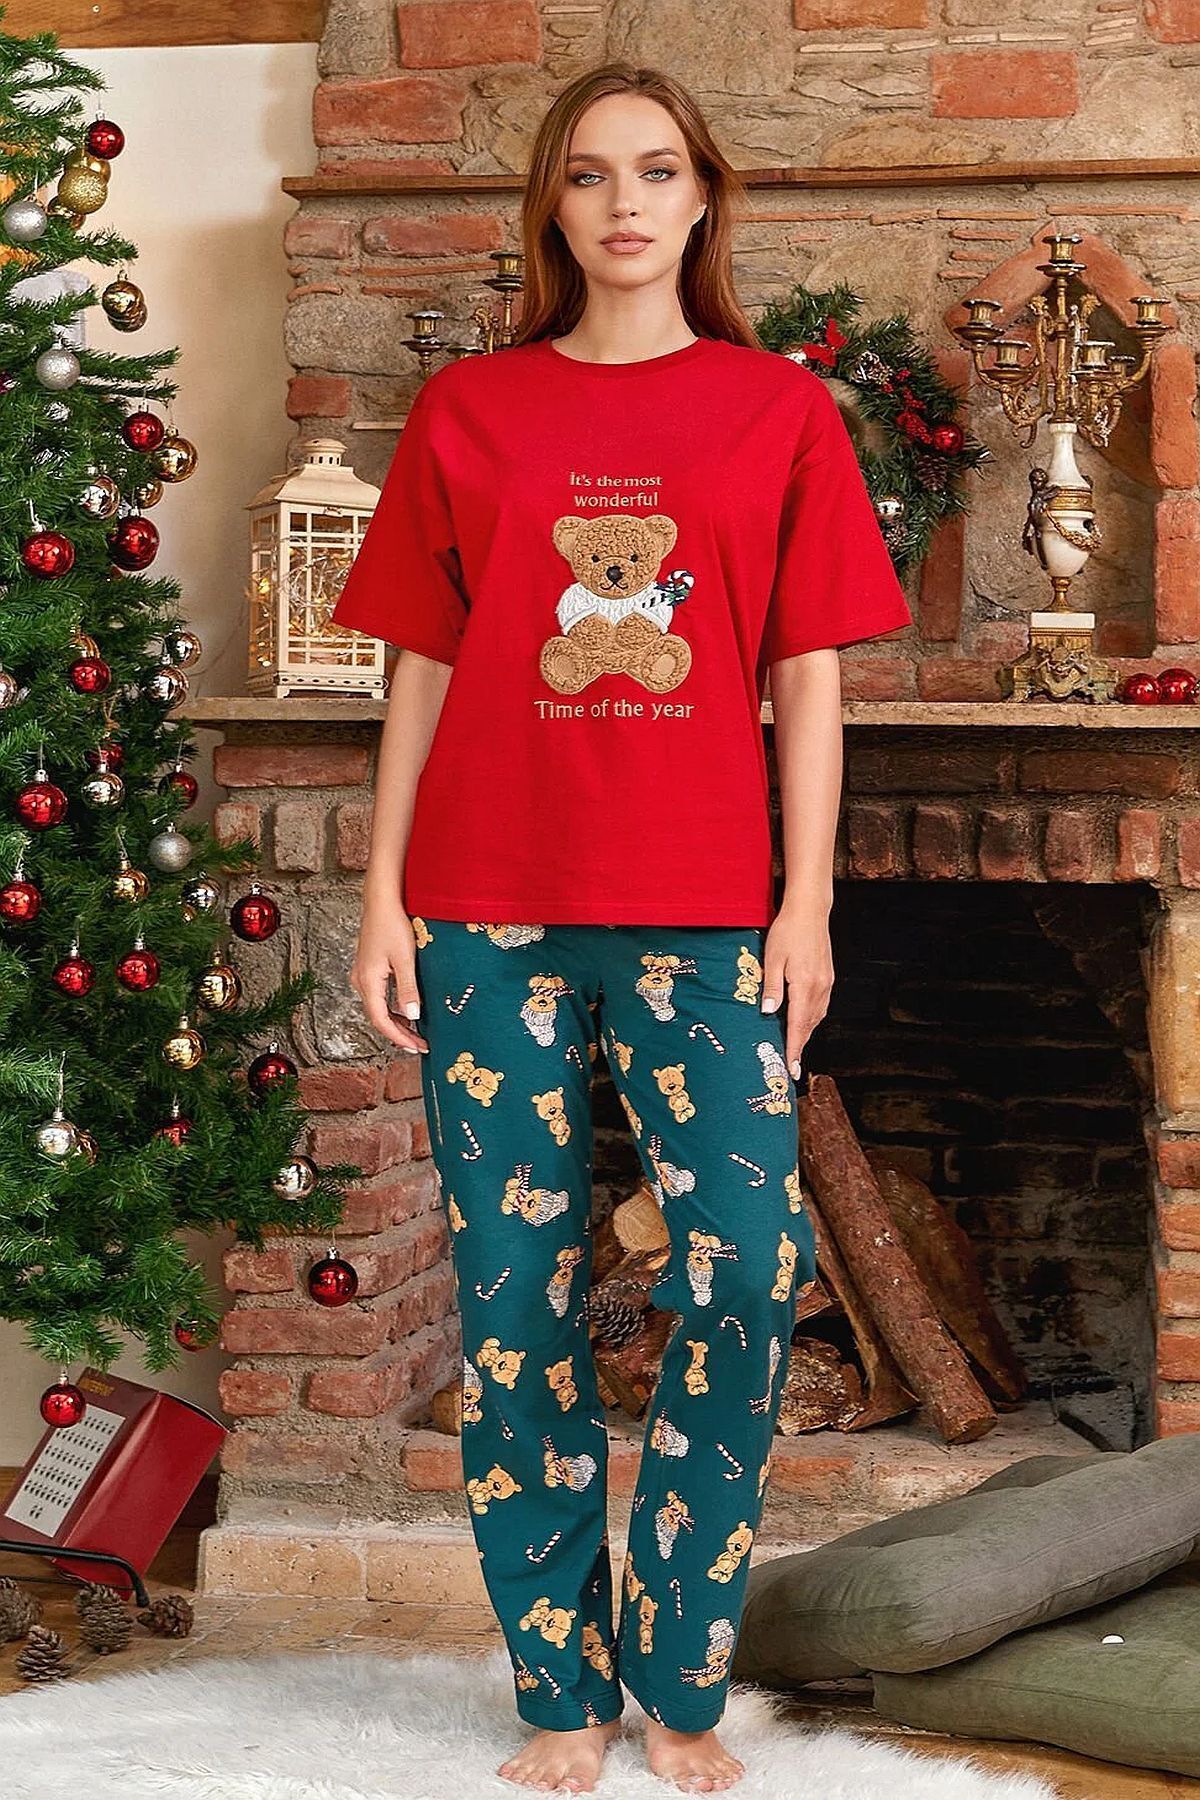 Cossy By Aqua 24045 Kadın Kısa Kollu Yeni Yıl Temalı Pijama Takımı-kırmızı